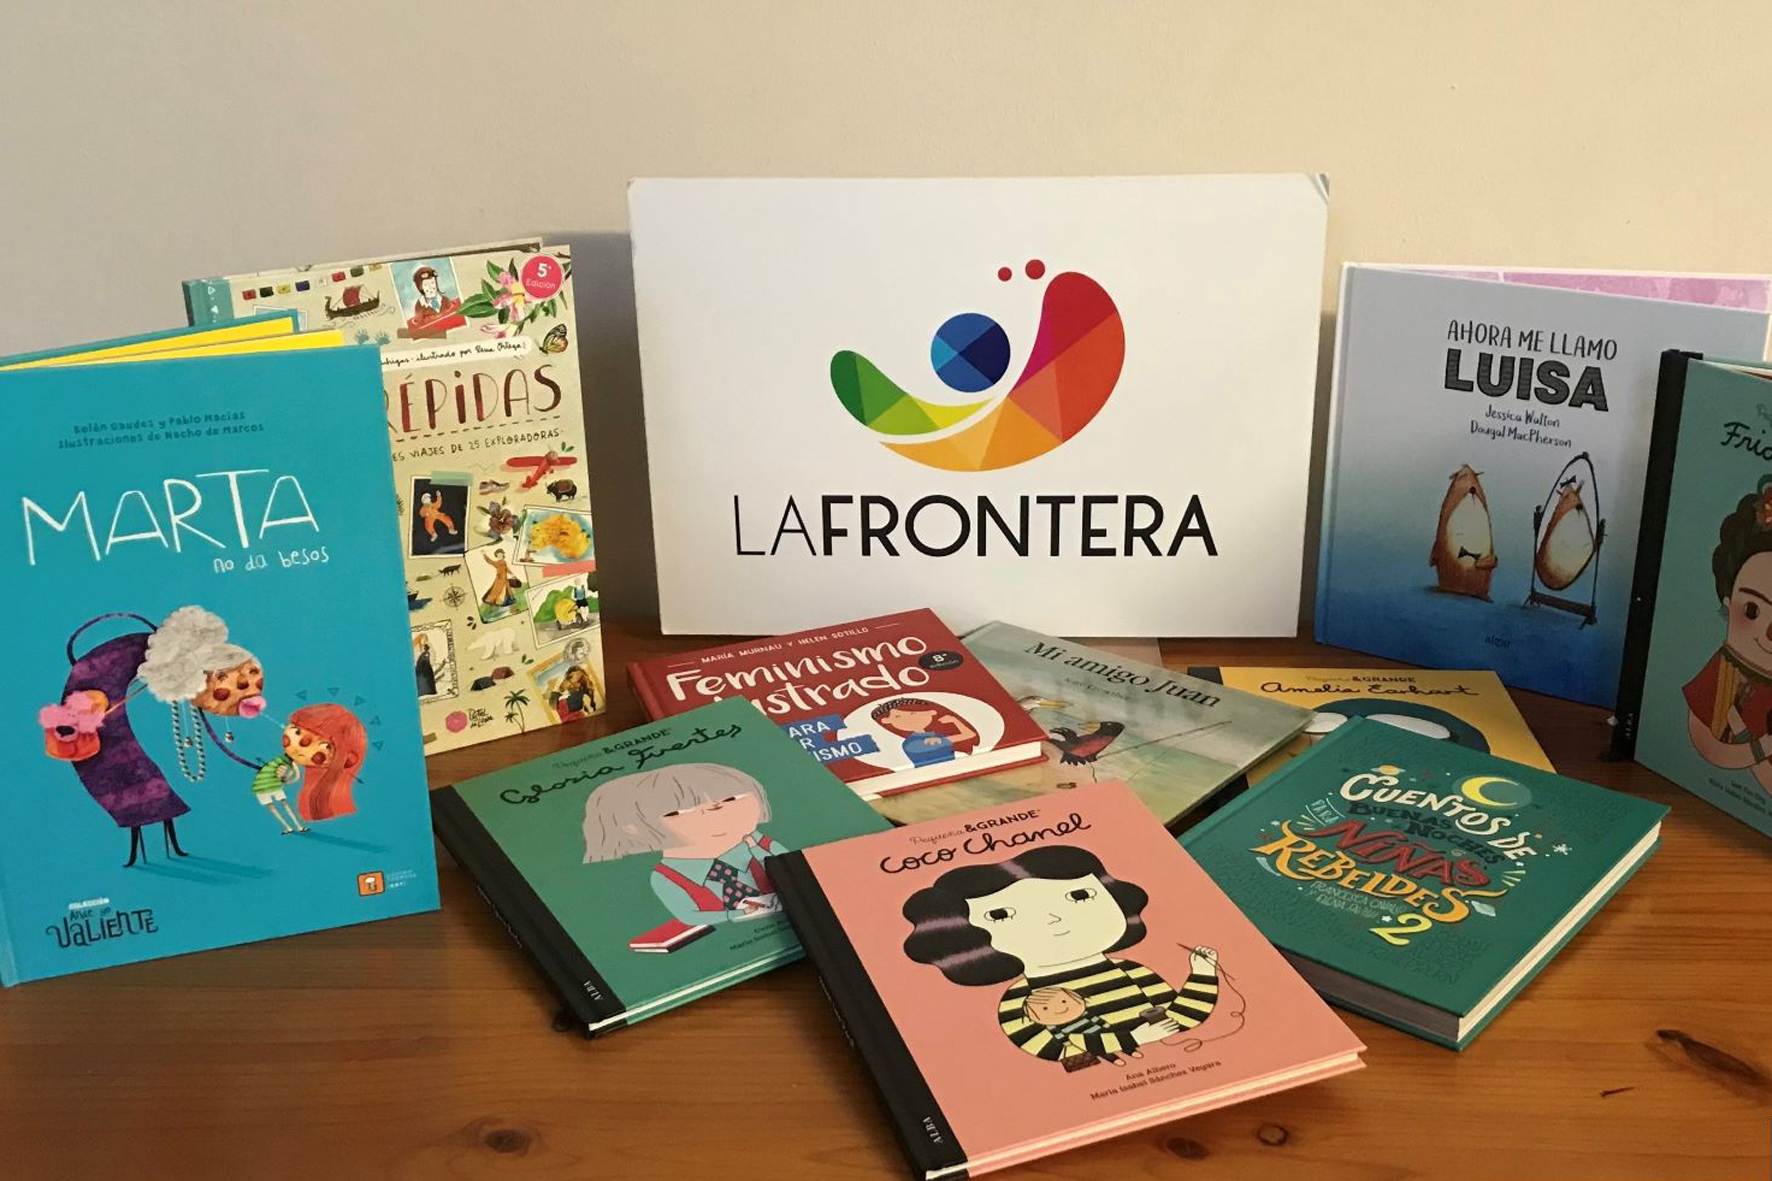 La Frontera fomenta la igualdad entre los menores con una oferta literaria infantil dispuesta en la biblioteca municipal